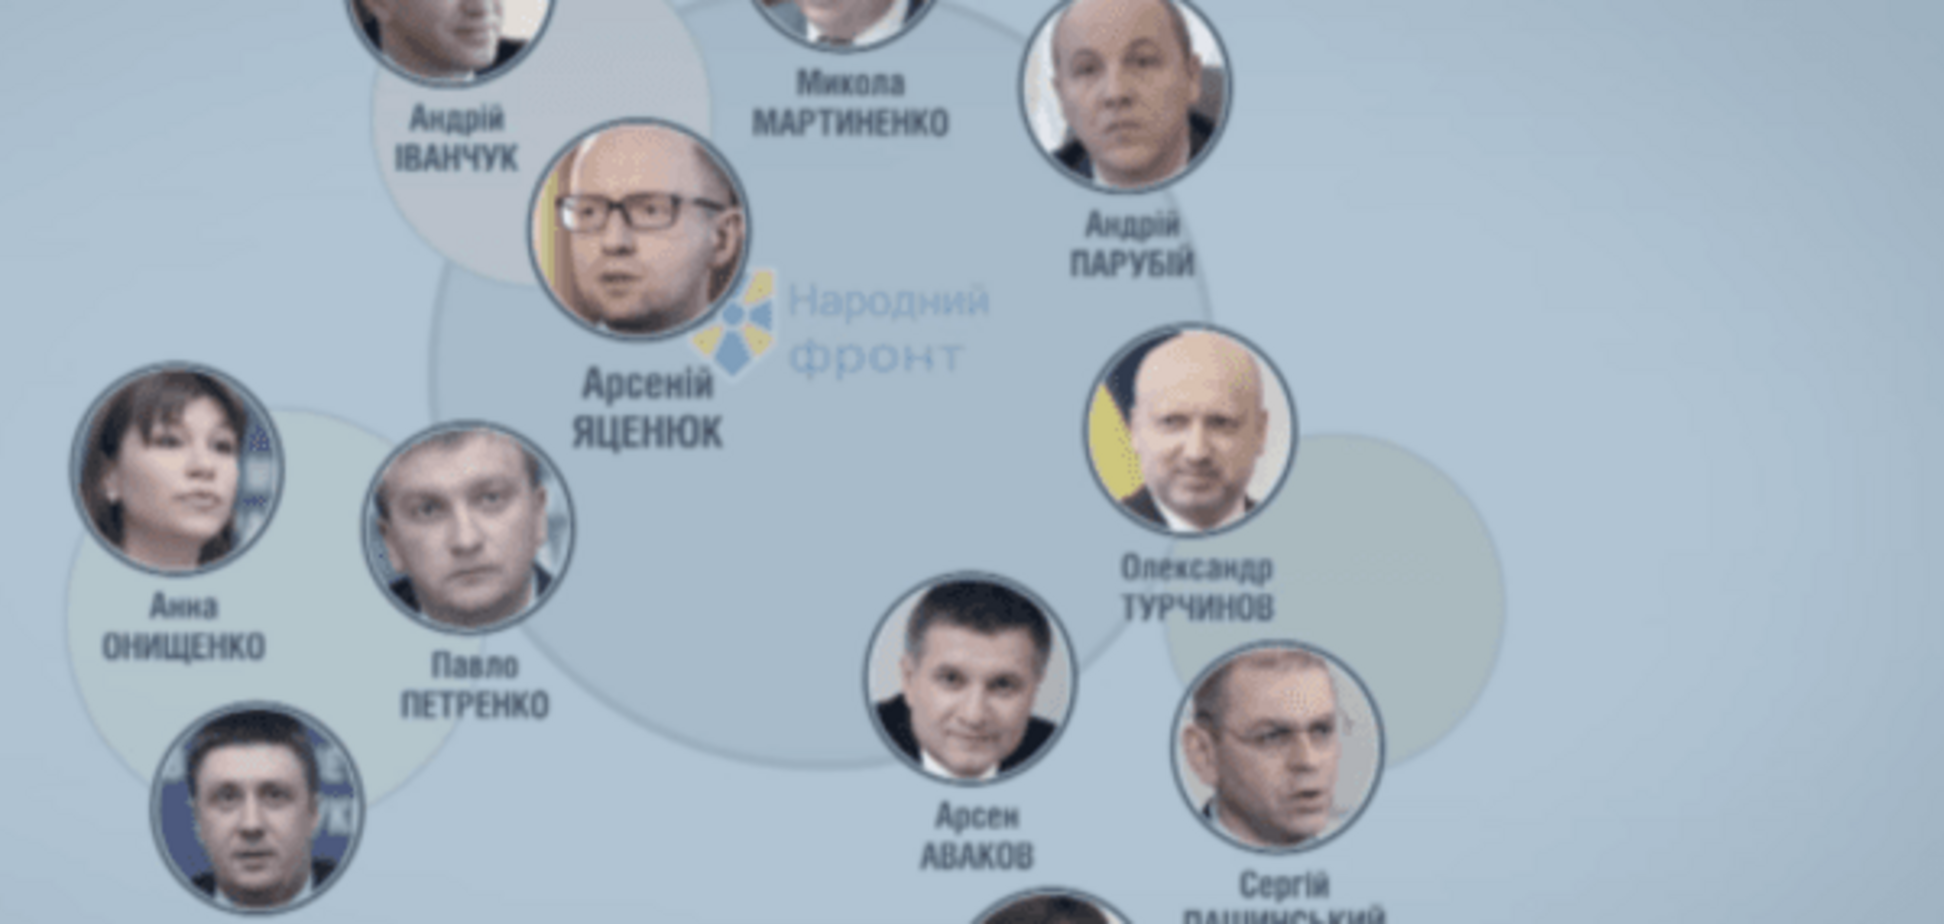 'Хто є ху': журналісти розмотали 'клубок' з олігархів в партії Яценюка. Відеорозслідування